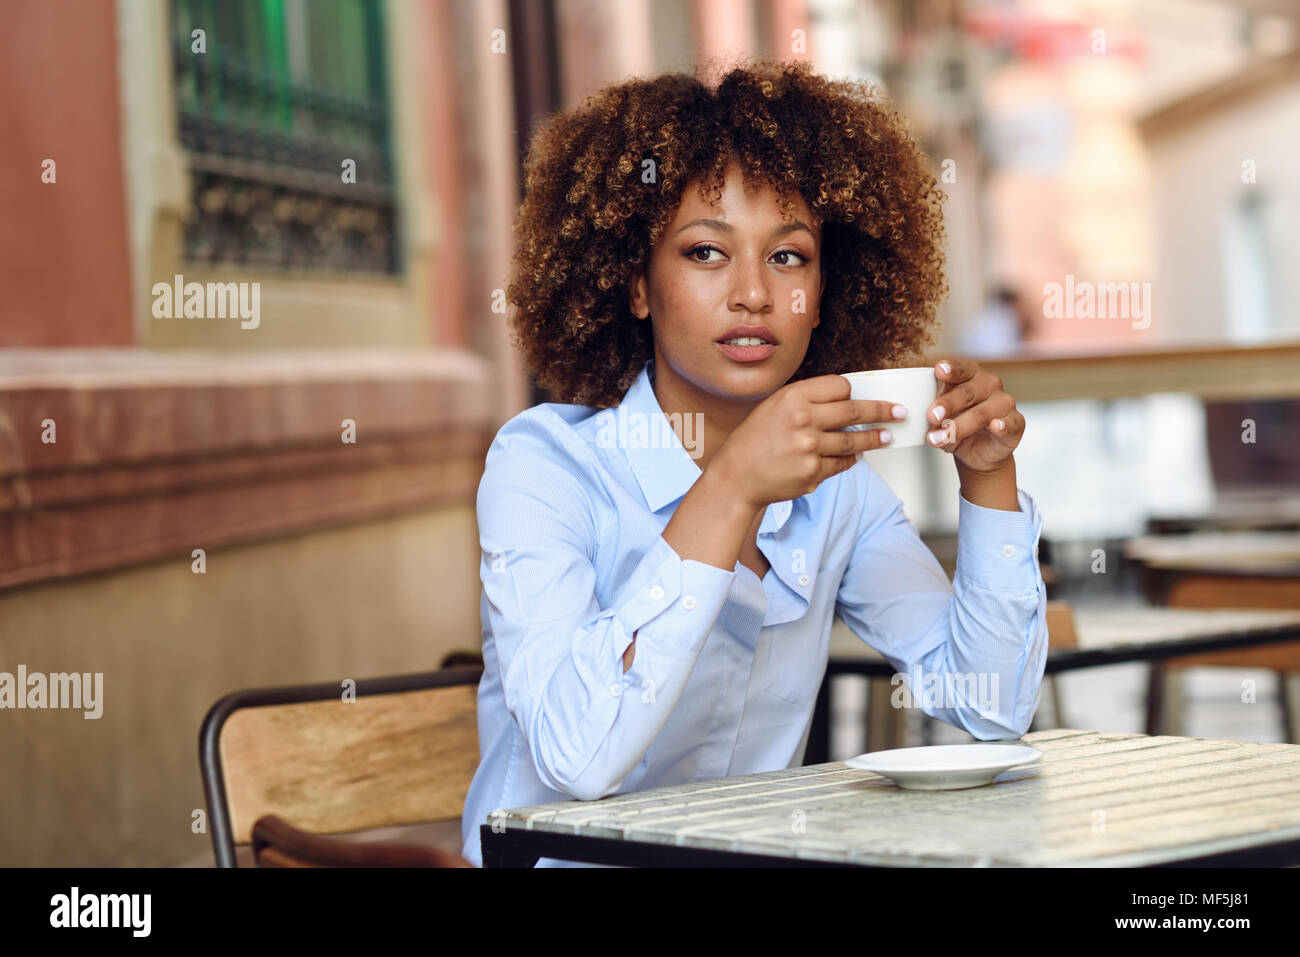 Spanien, Andalusien, Malaga. Schwarze Frau, afro Frisur, in einem Café sitzen. Mädchen mit formalwear eine Pause. Lifestyle Konzept. Stockfoto